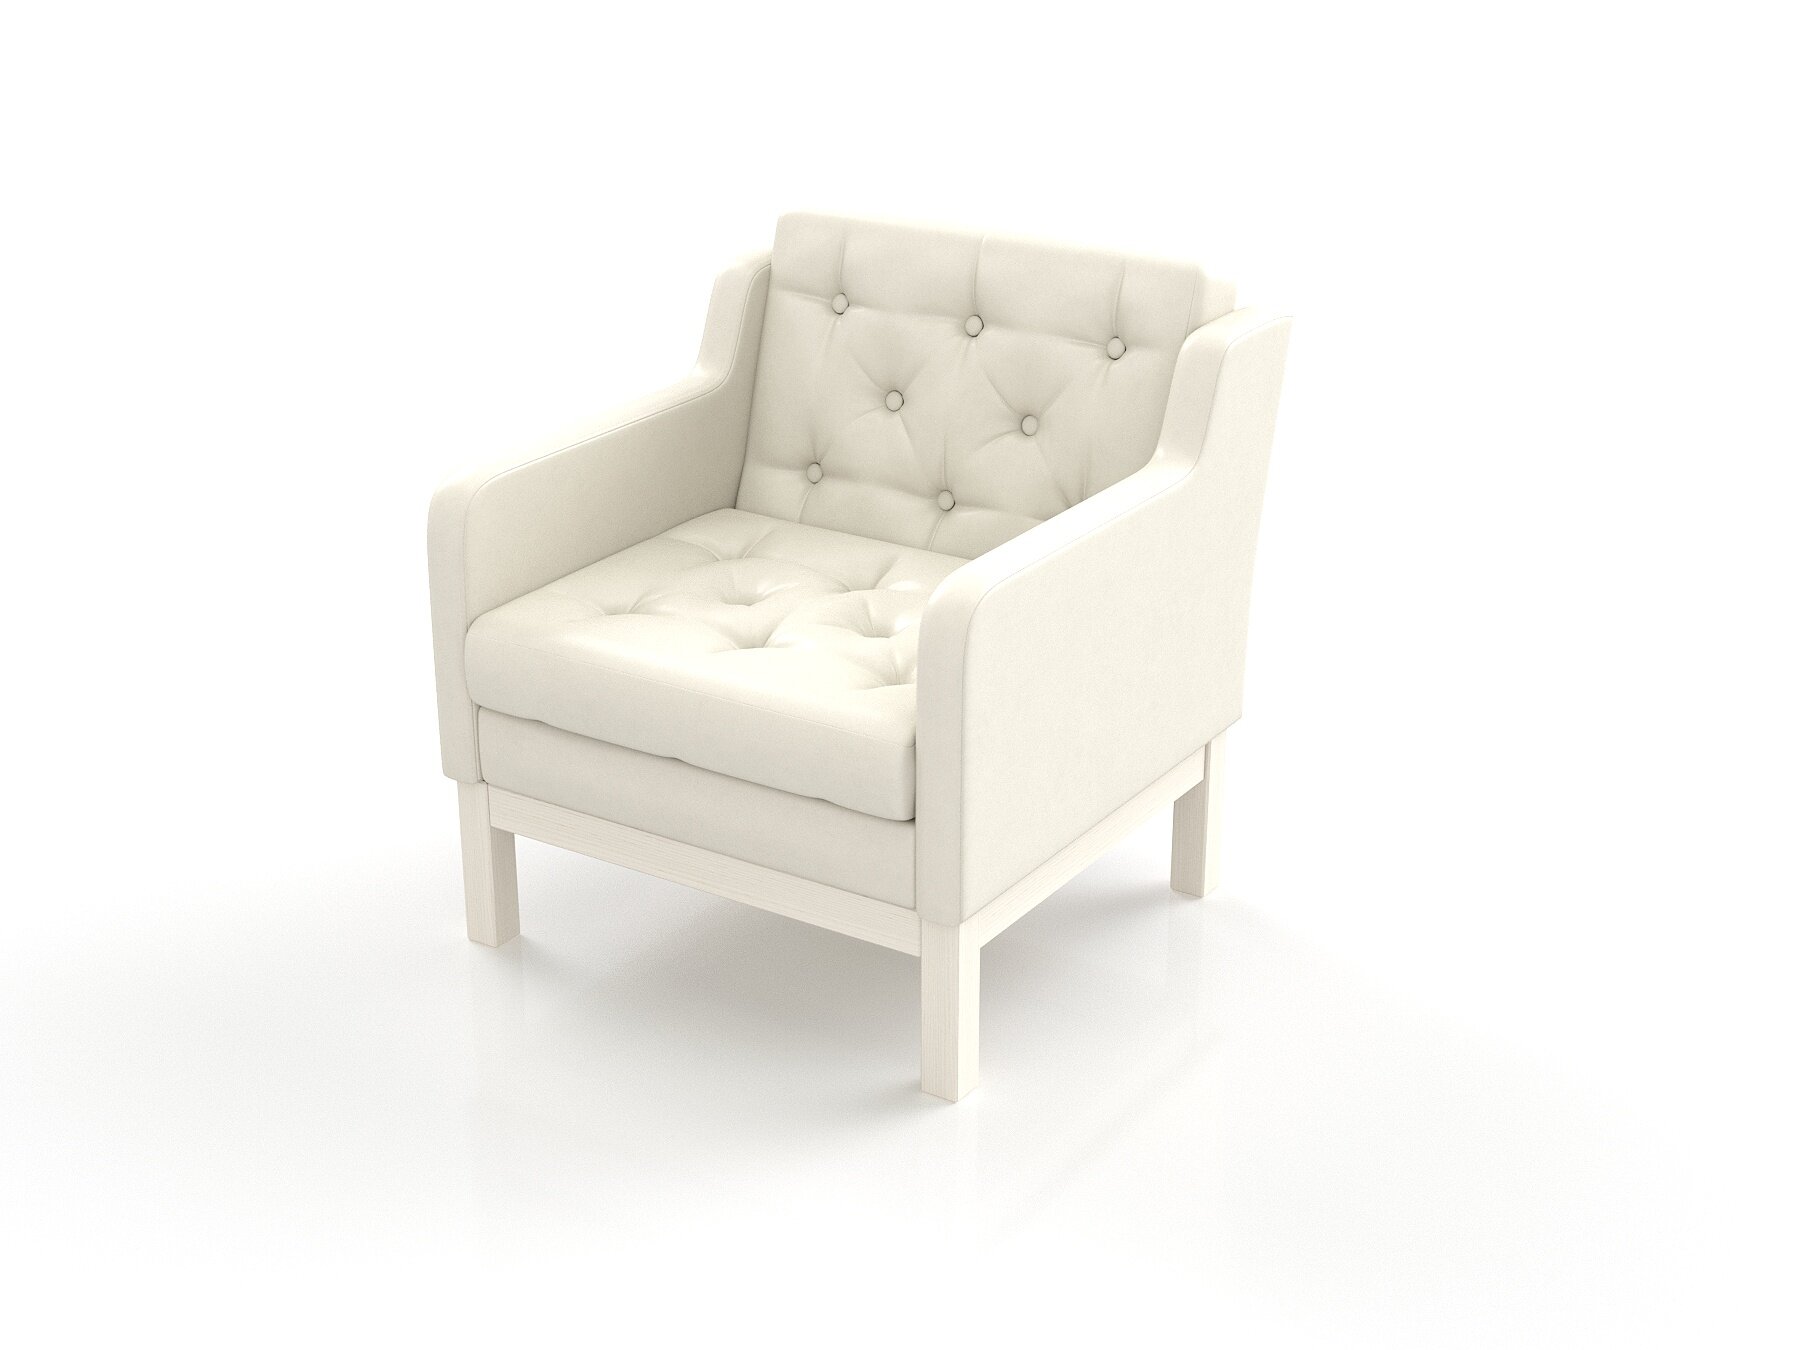 Кресло Айверс, беленый дуб-белый, велюр мягкое, для дома, для гостиной, для отдыха дома, на балкон, скандинавский лофт